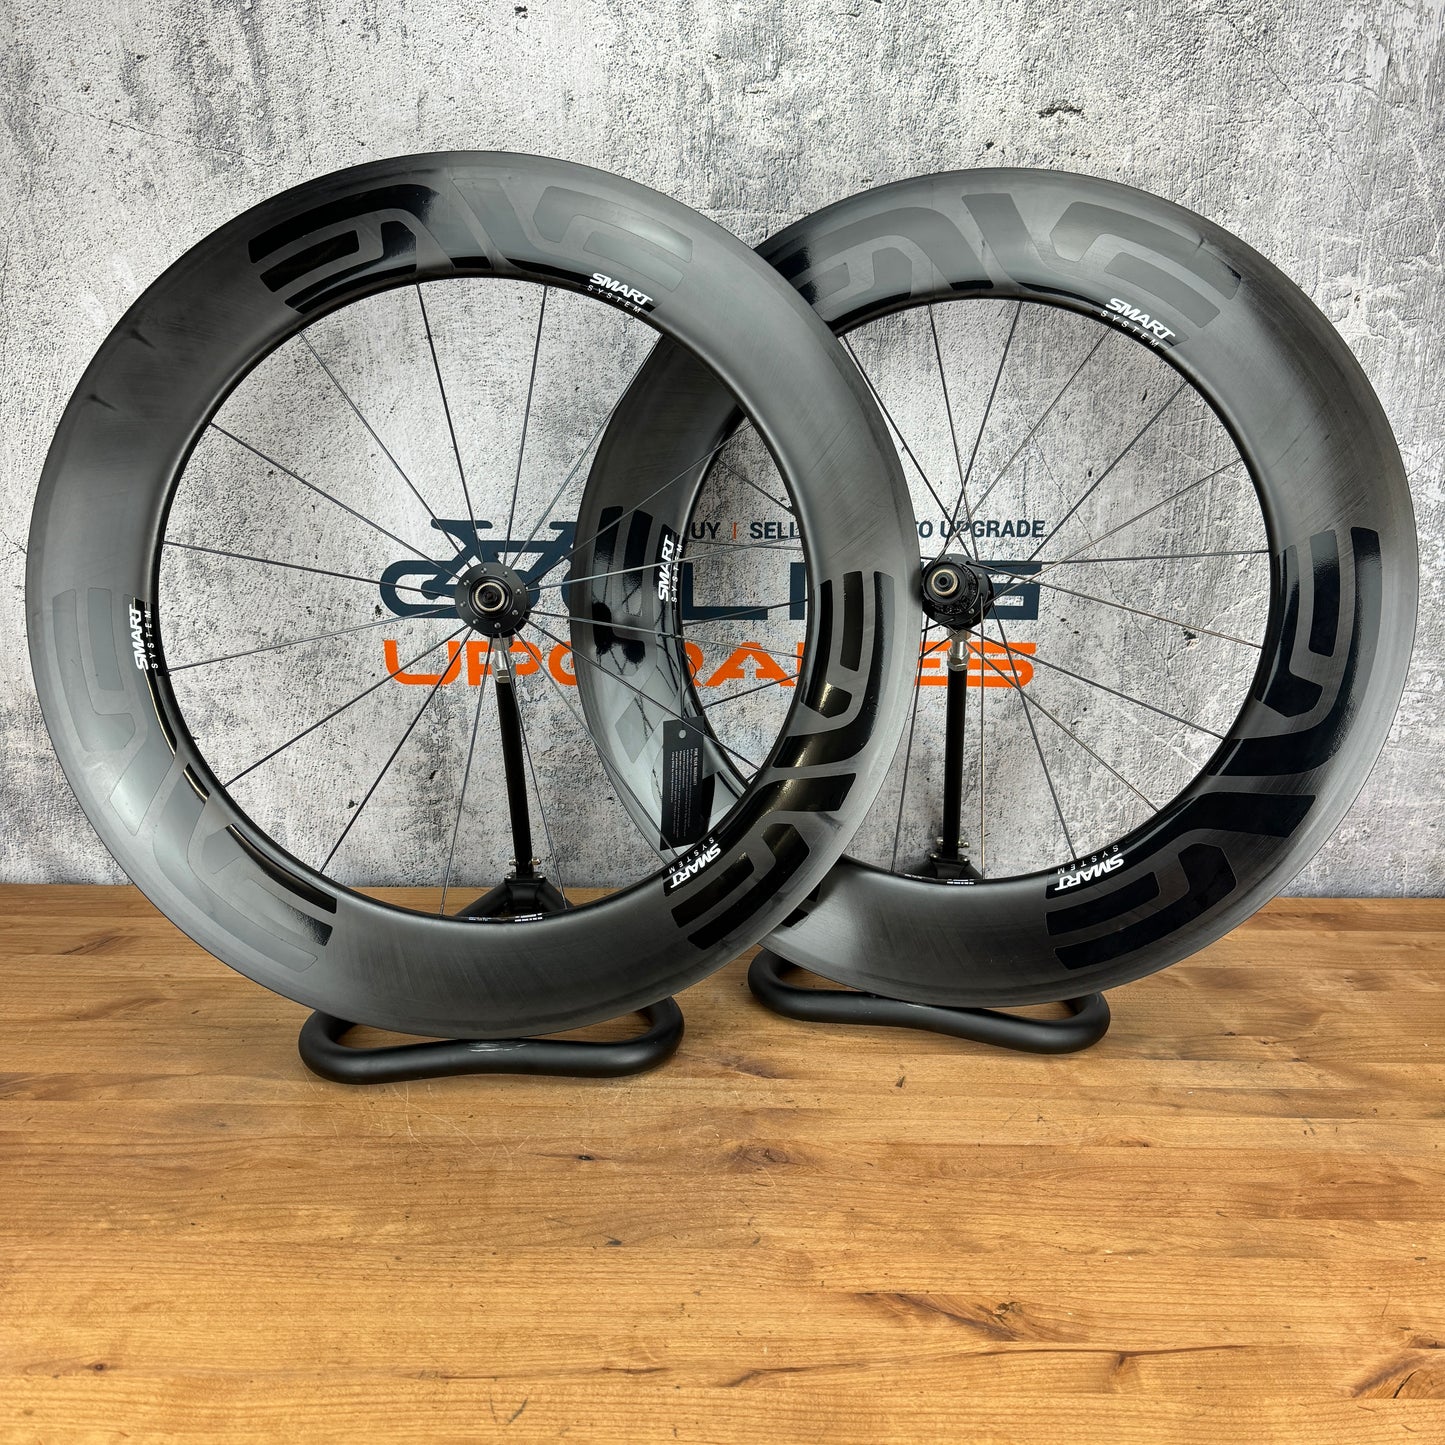 New! Enve SES 8.9 Carbon Clincher TT/Triathlon Wheelset 700c Rim Brake 1811g